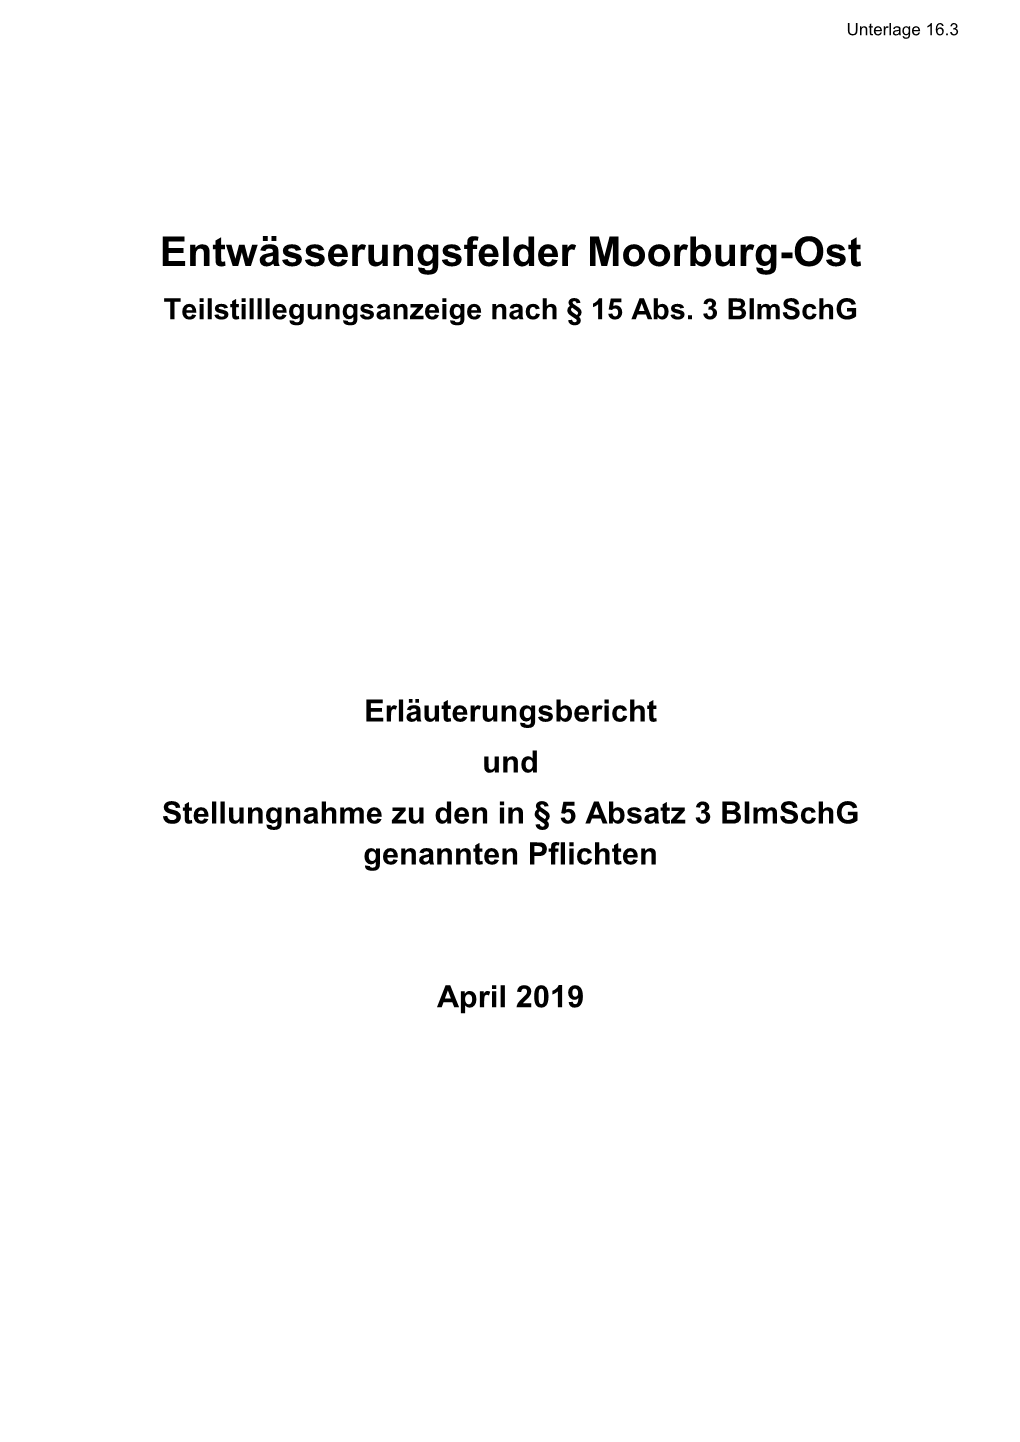 Entwässerungsfelder Moorburg-Ost Teilstilllegungsanzeige Nach § 15 Abs